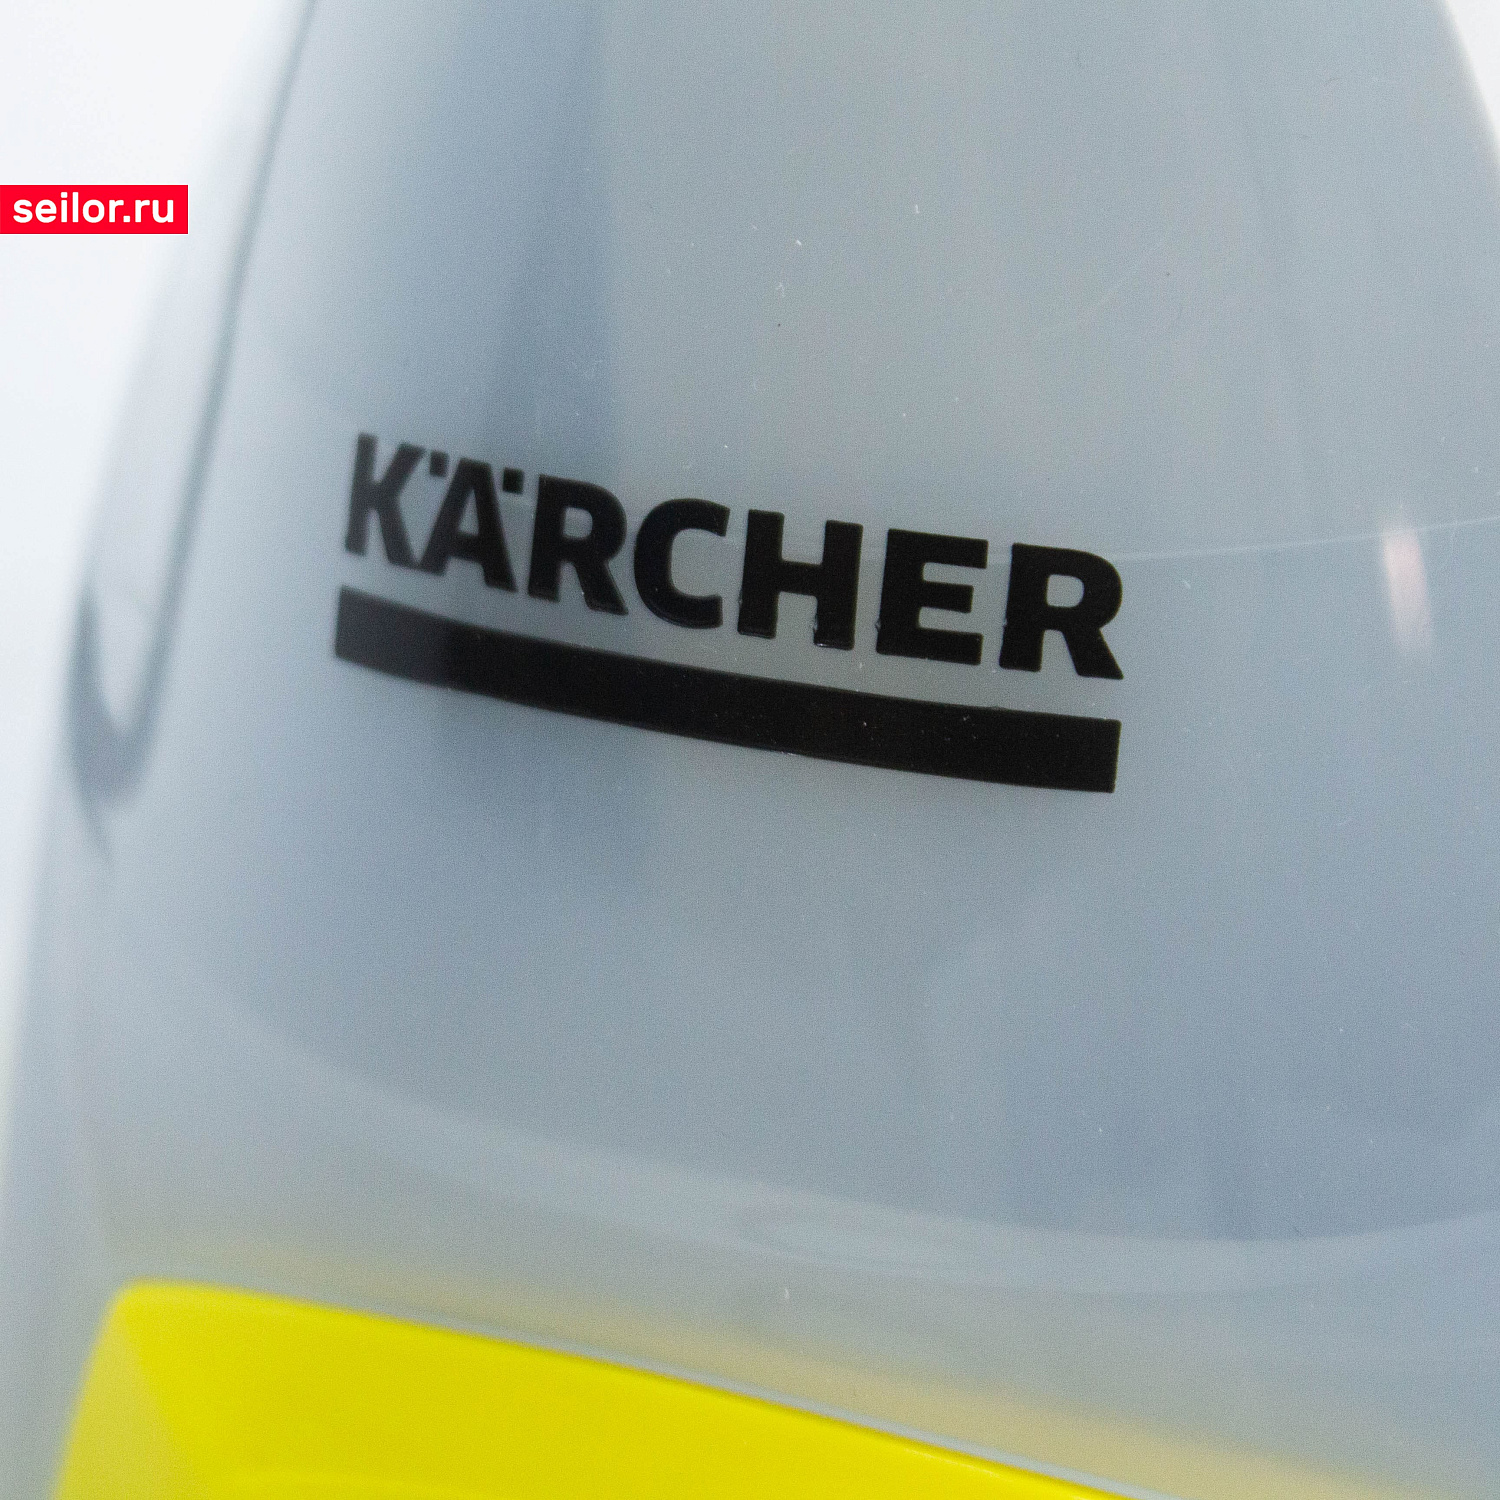 Пароочиститель Karcher SC4. Компактный борец с грязью